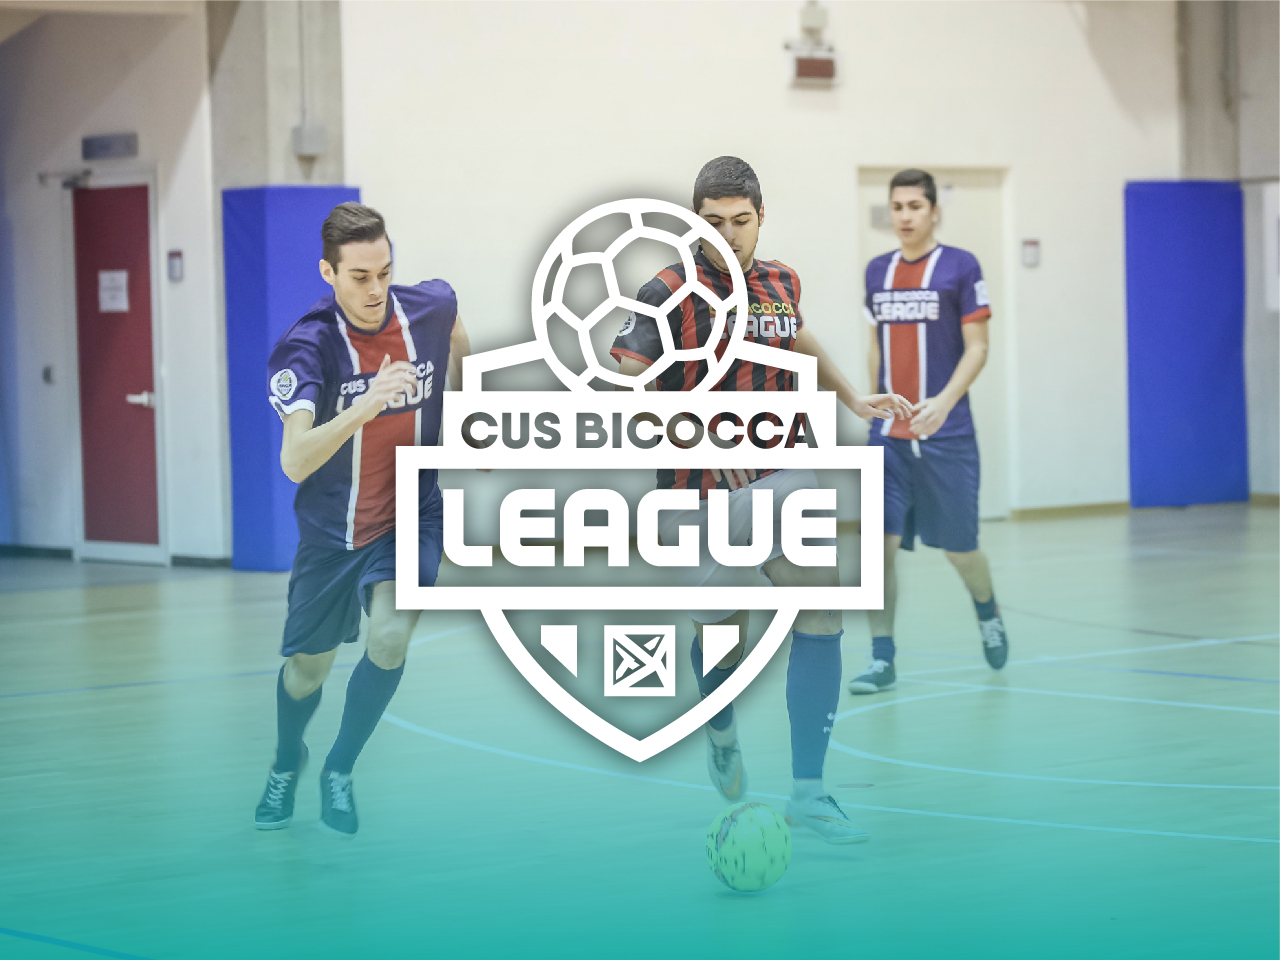 CUS Bicocca League • CUS Bicocca